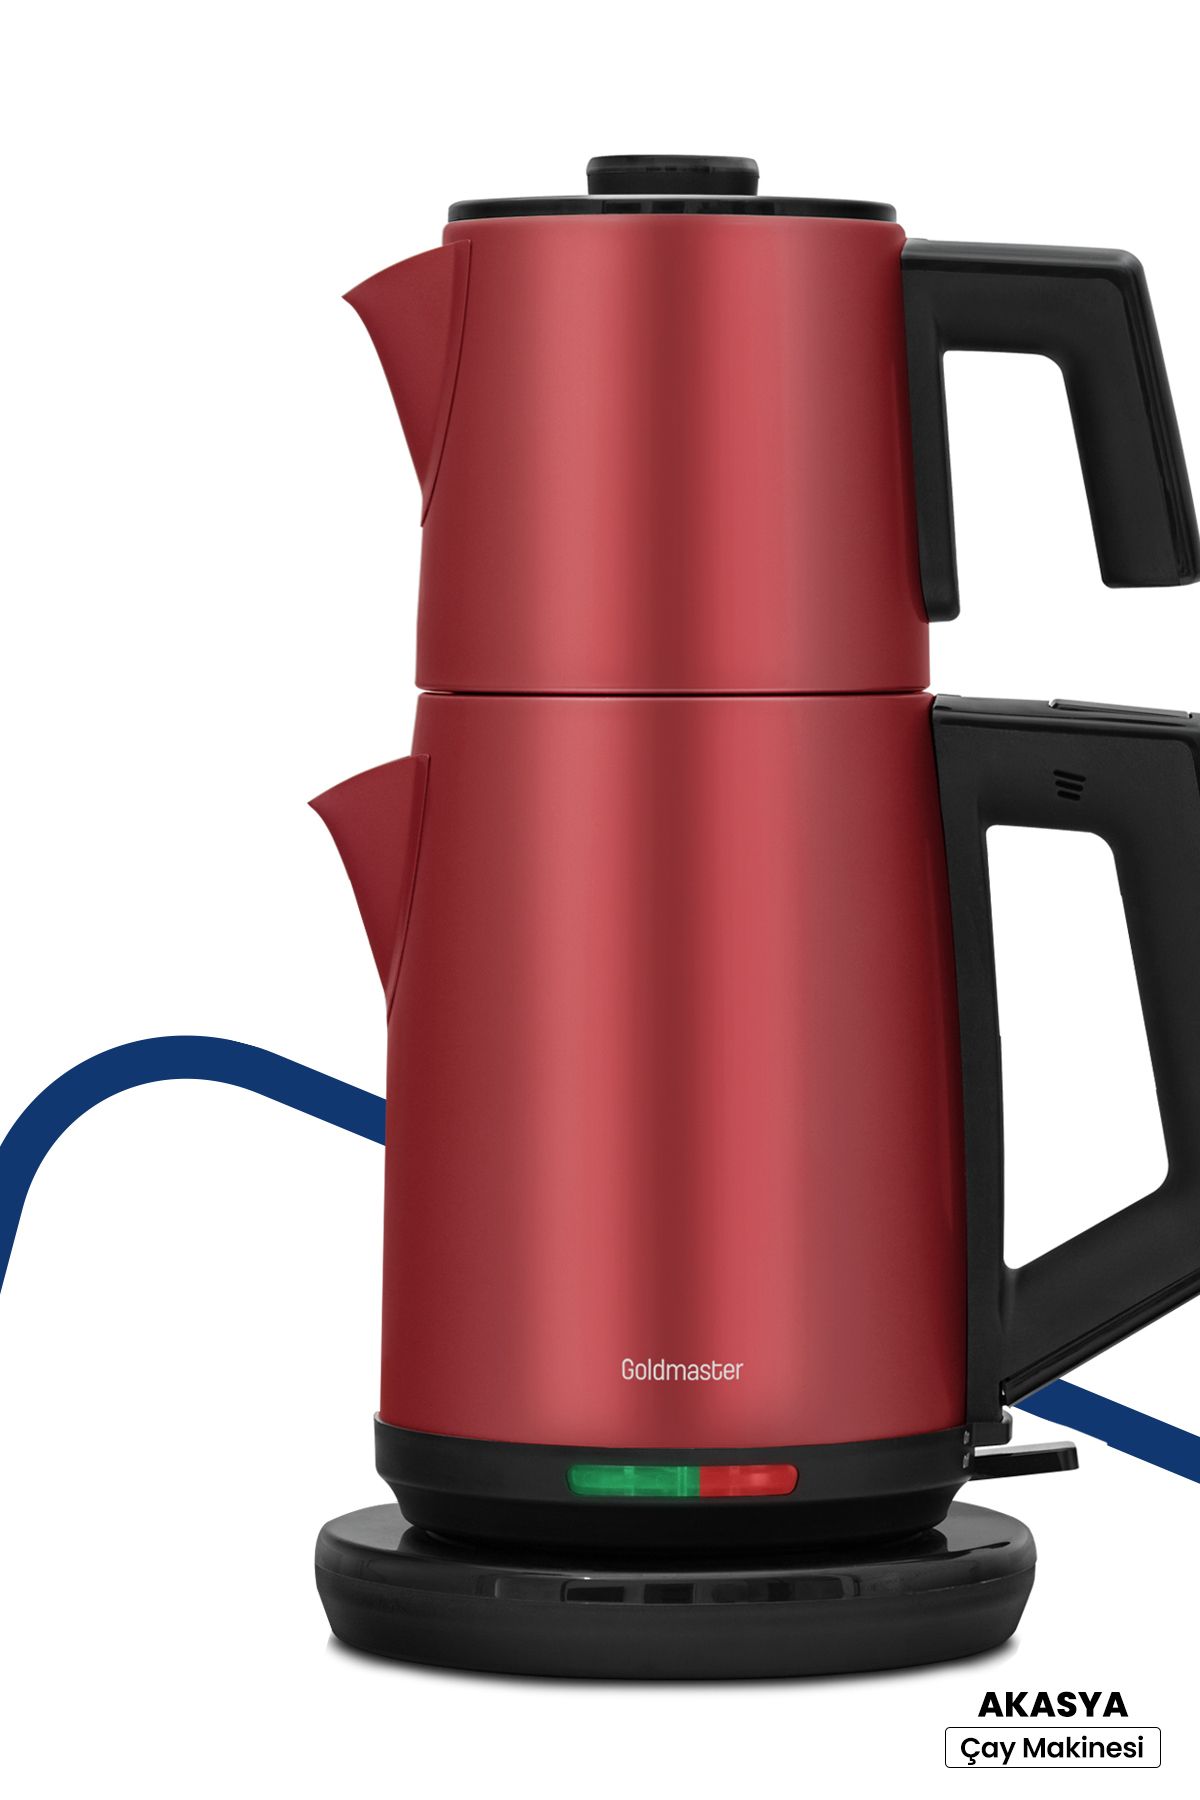 GoldMaster Akasya Vişne Kırmızı Xl 2200 Watt Patentli Damlatmayan Tasarımı Çelik Çay Makinesi Ve Su Isıtıcısı